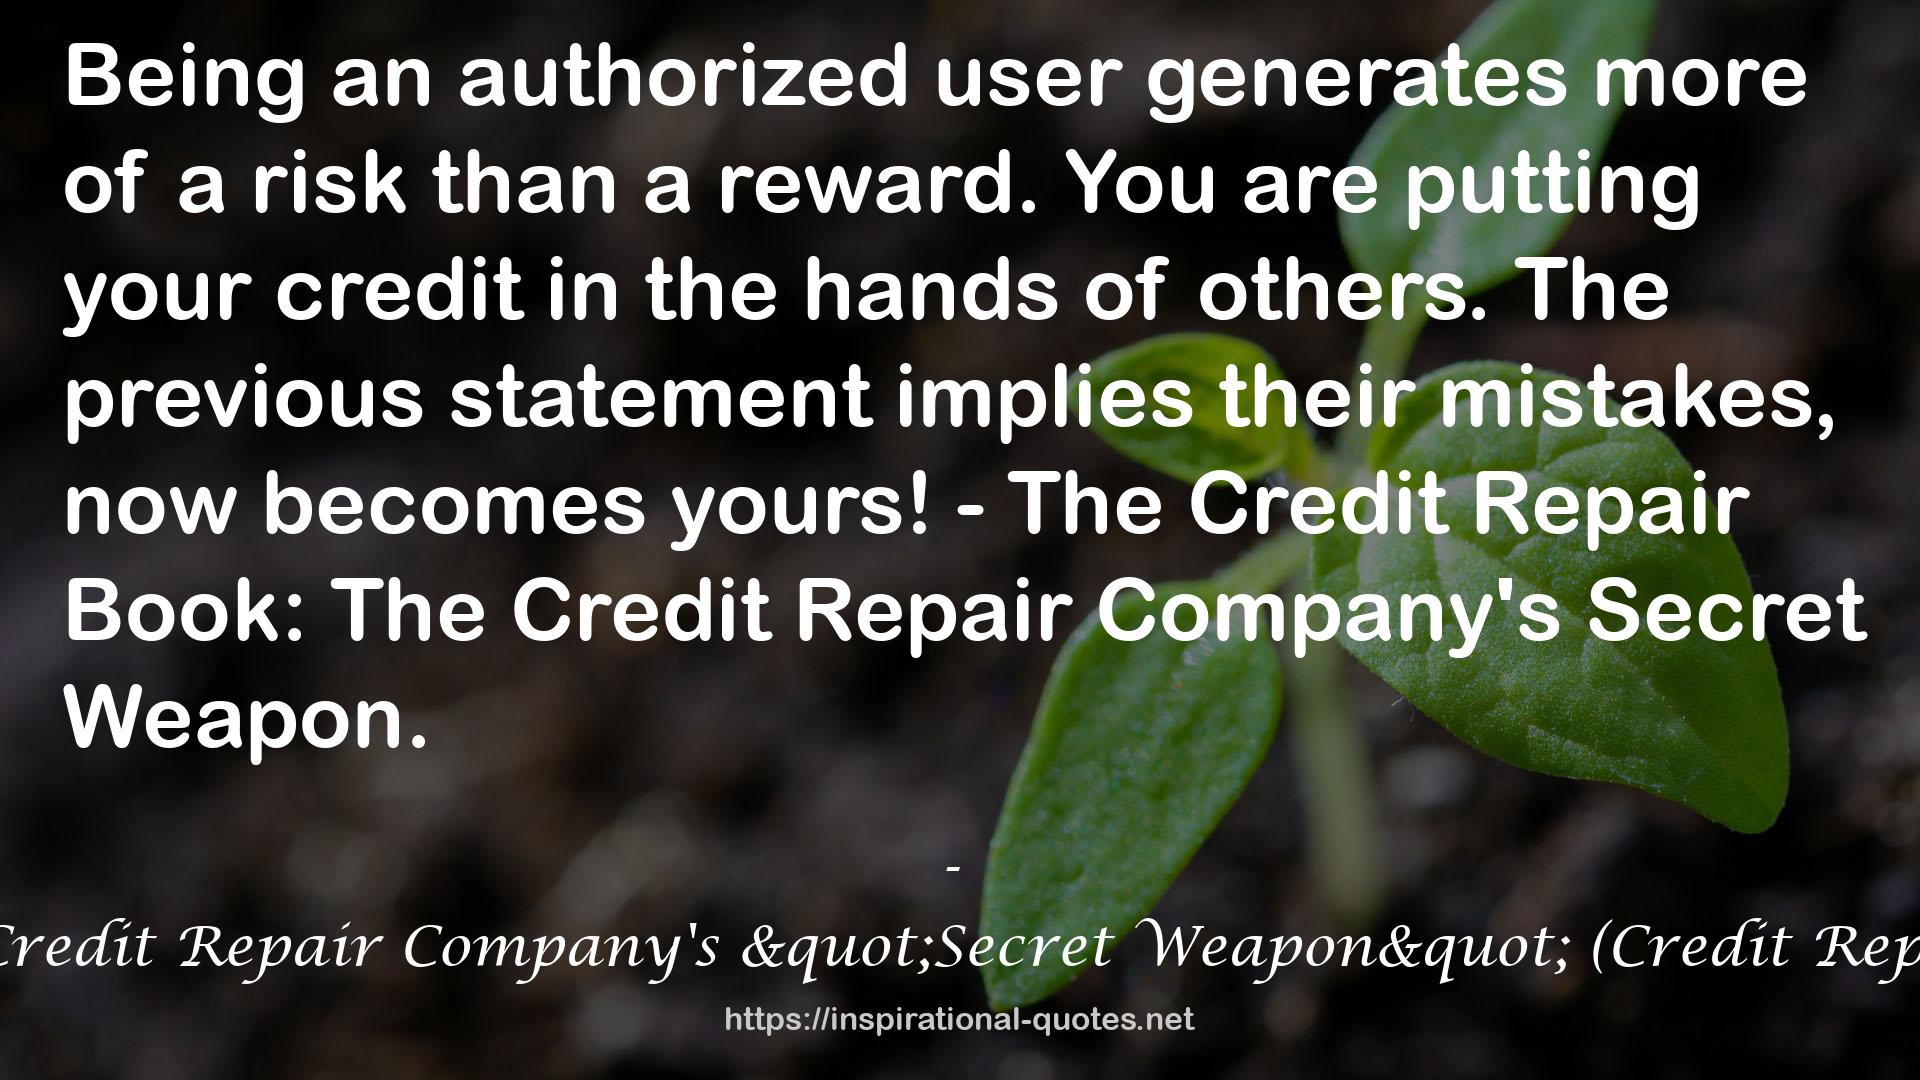 The Credit Repair Book: The Credit Repair Company's "Secret Weapon" (Credit Repair Companies Secrets Book 1) QUOTES